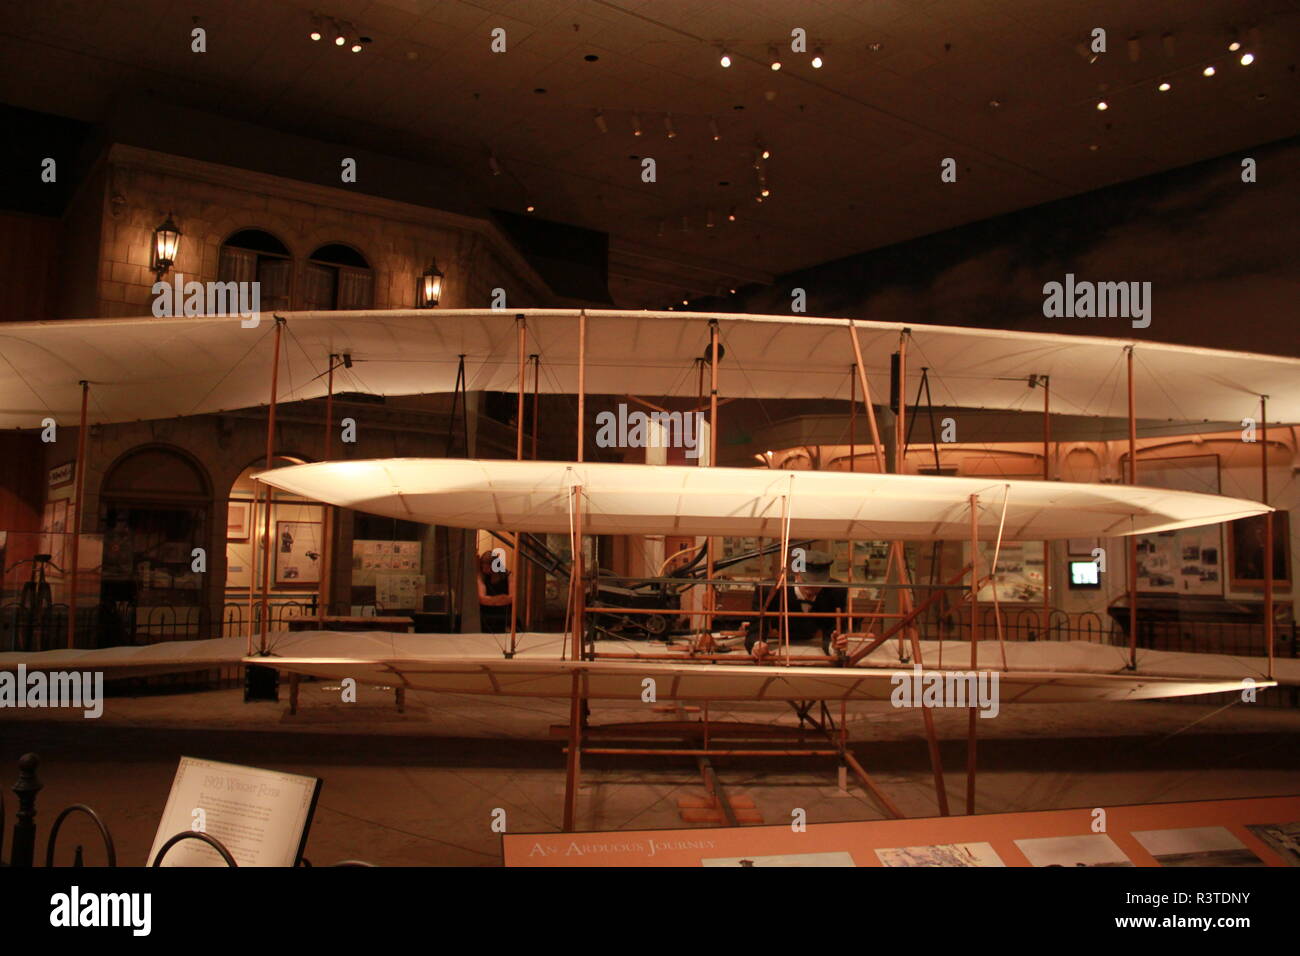 Modelo de los hermanos Wright planes Foto de stock